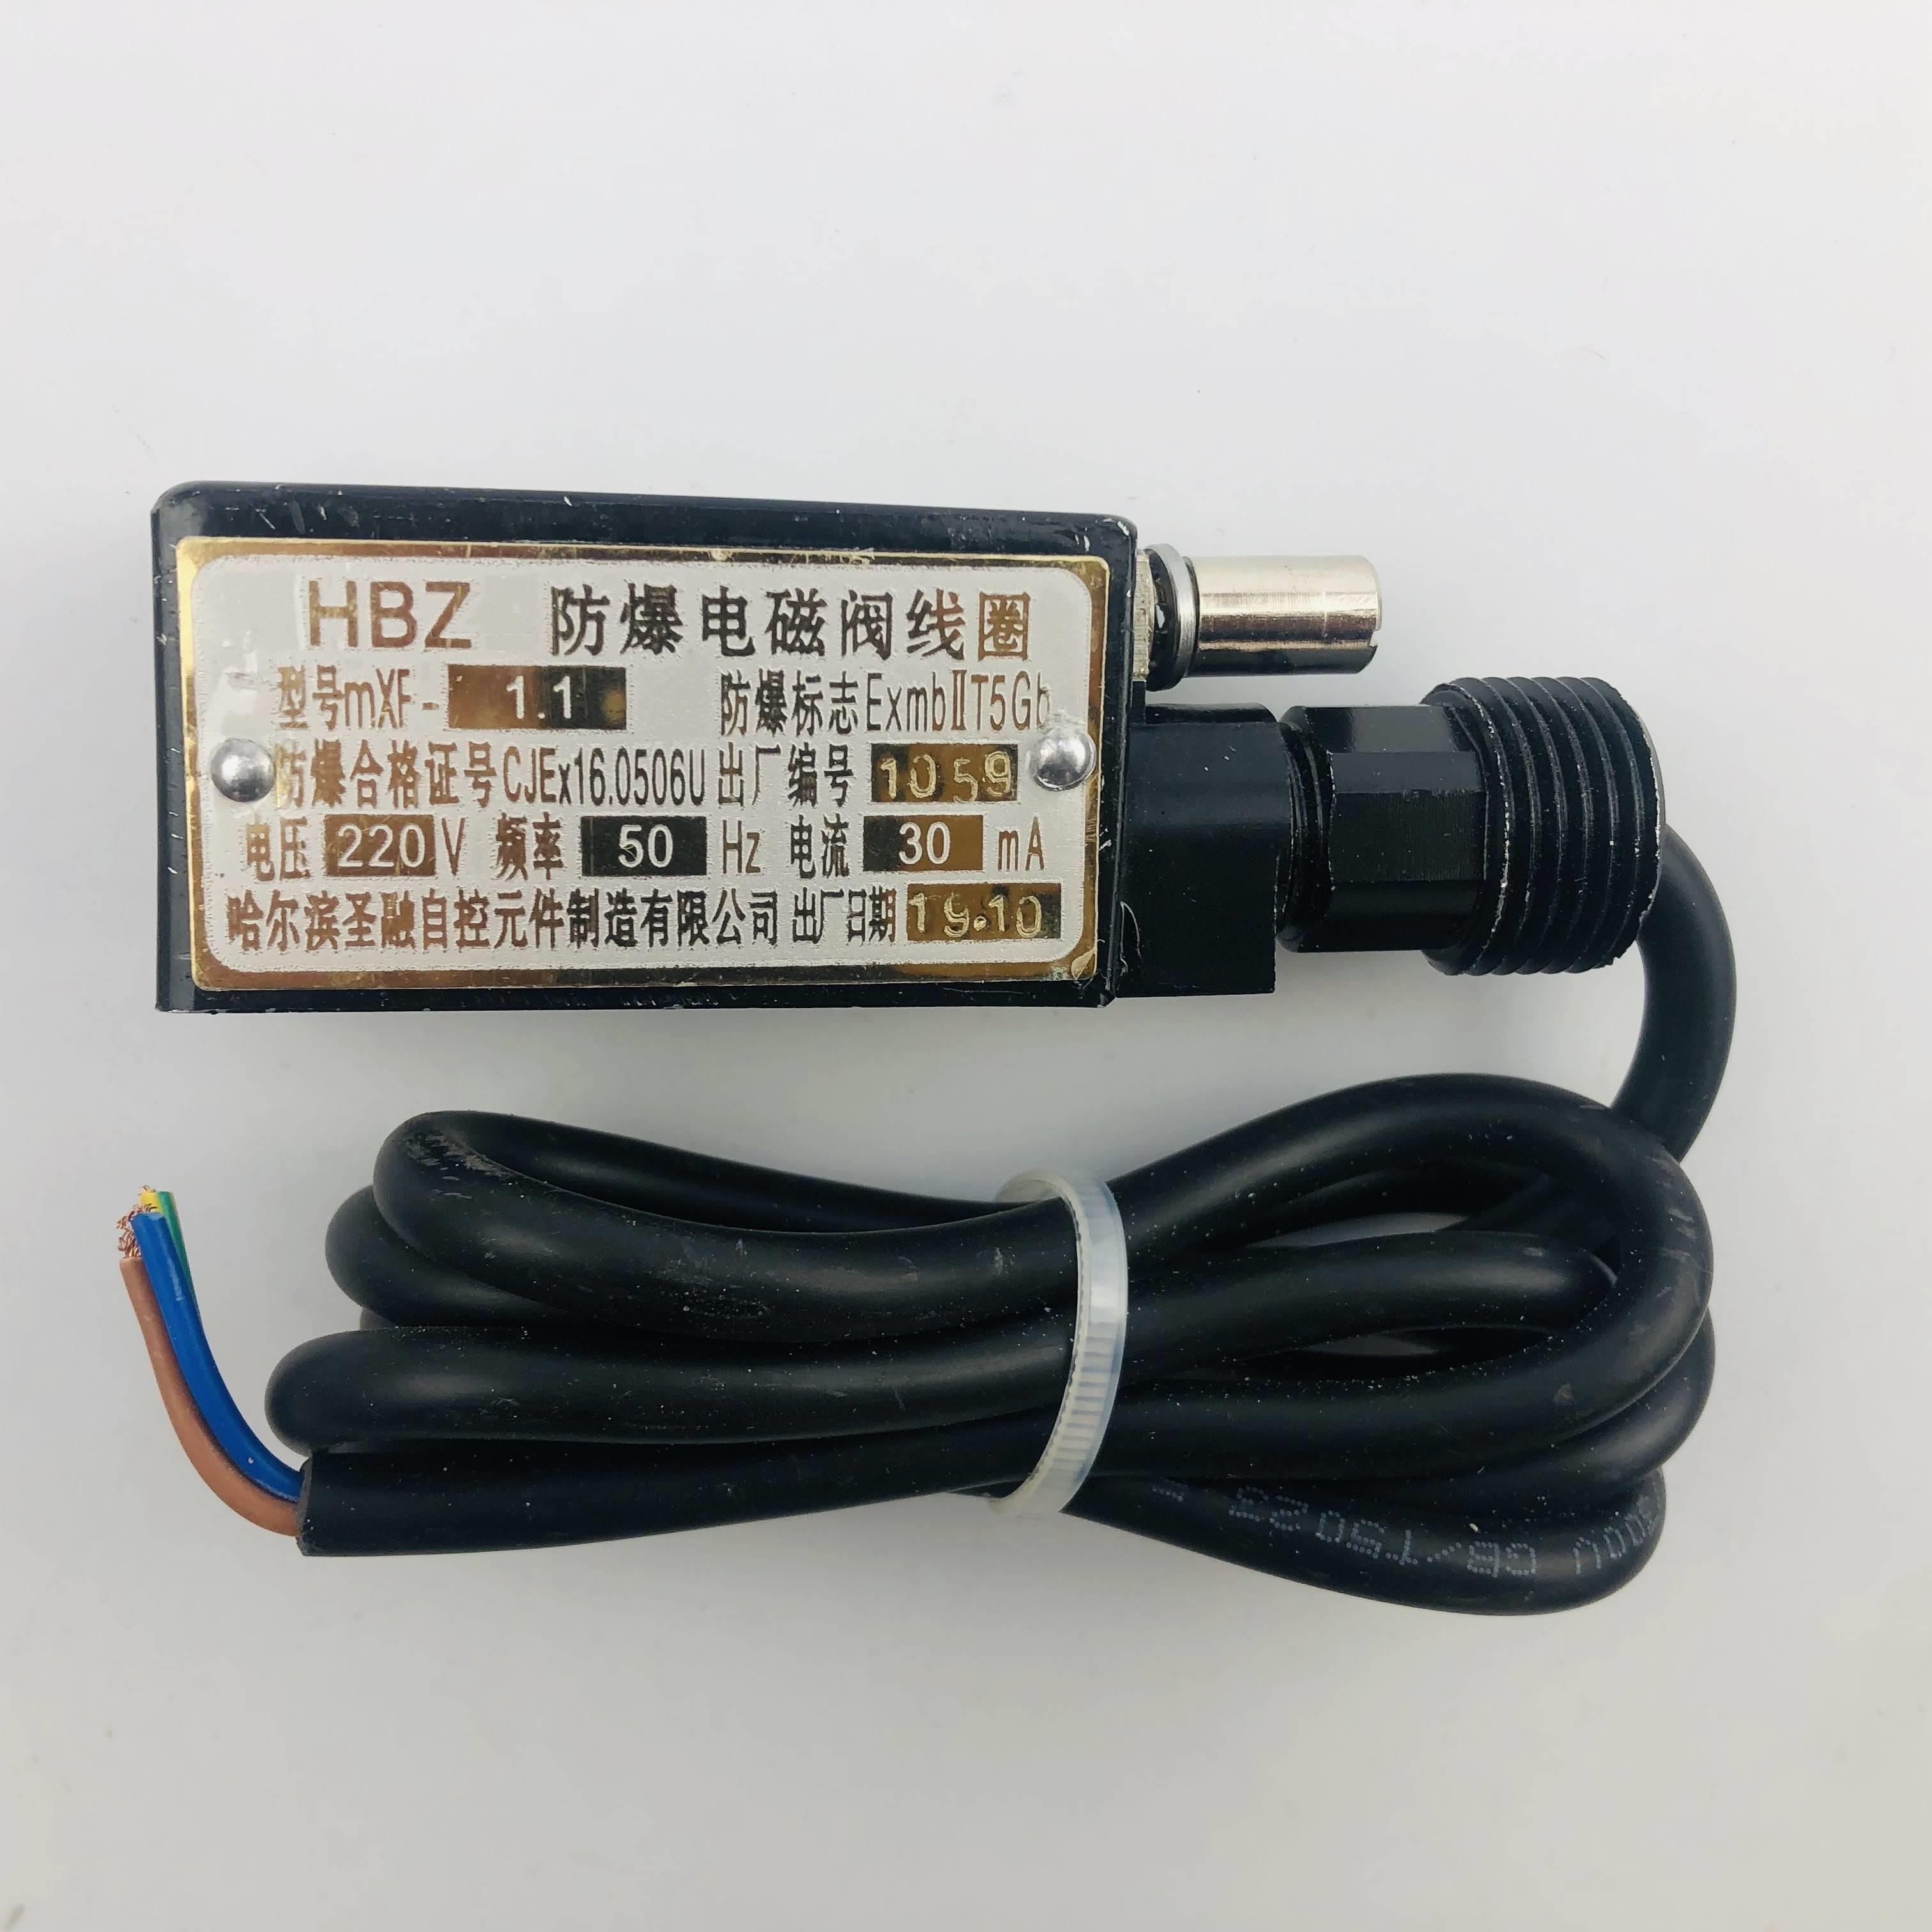 原厂HBZMXF-1.1防爆电磁阀线圈哈尔滨圣融24V190MA/220V